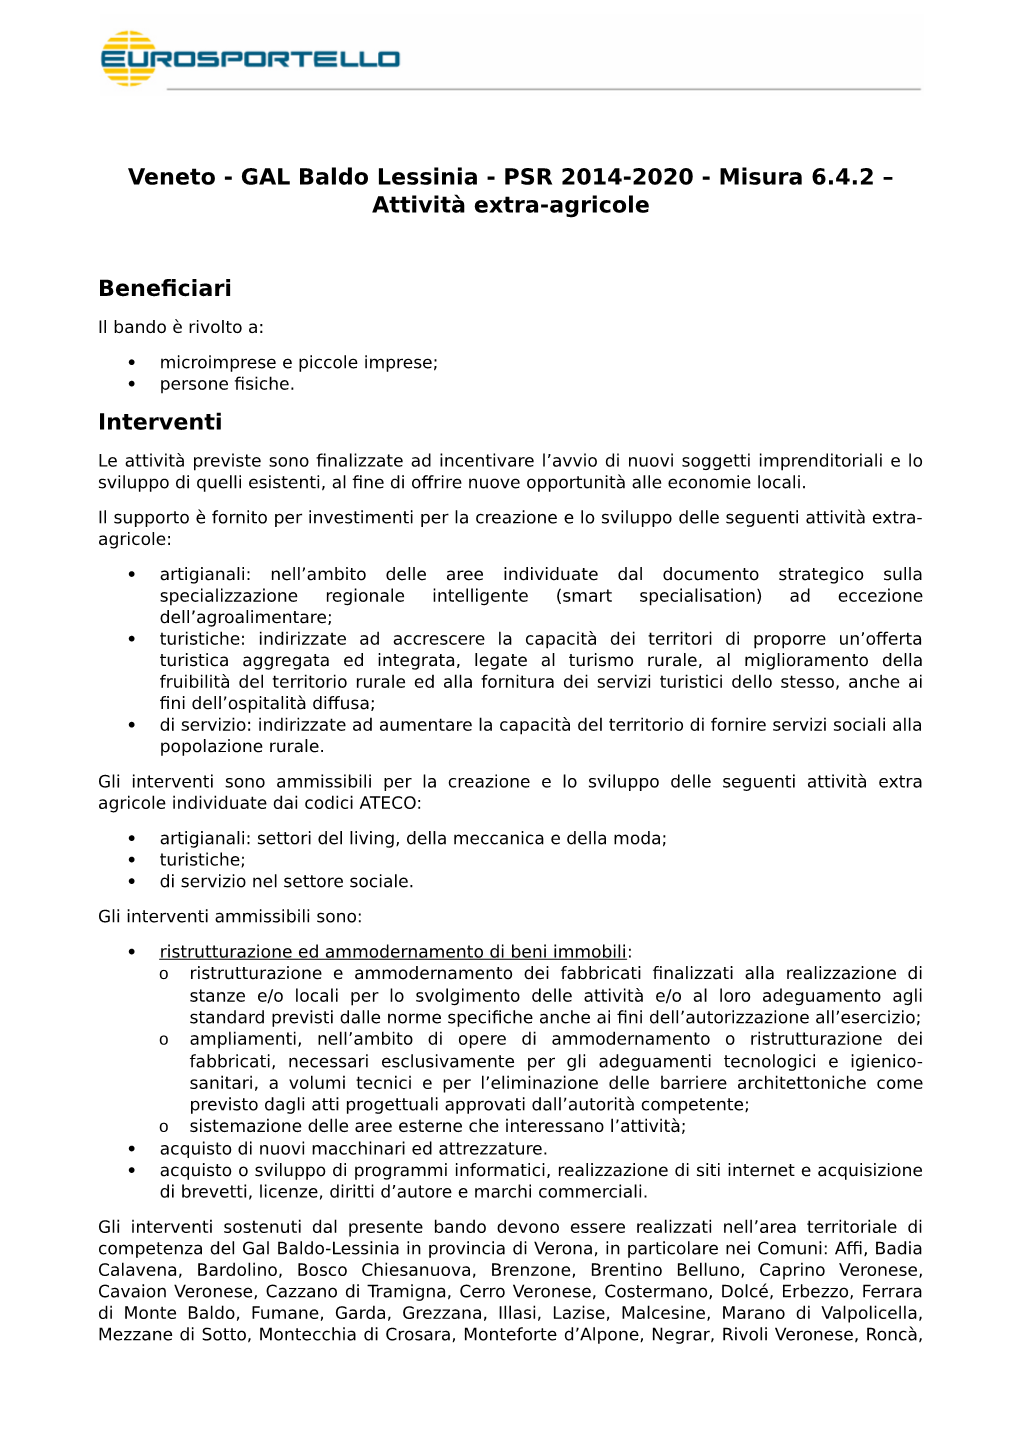 Veneto - GAL Baldo Lessinia - PSR 2014-2020 - Misura 6.4.2 – Attività Extra-Agricole